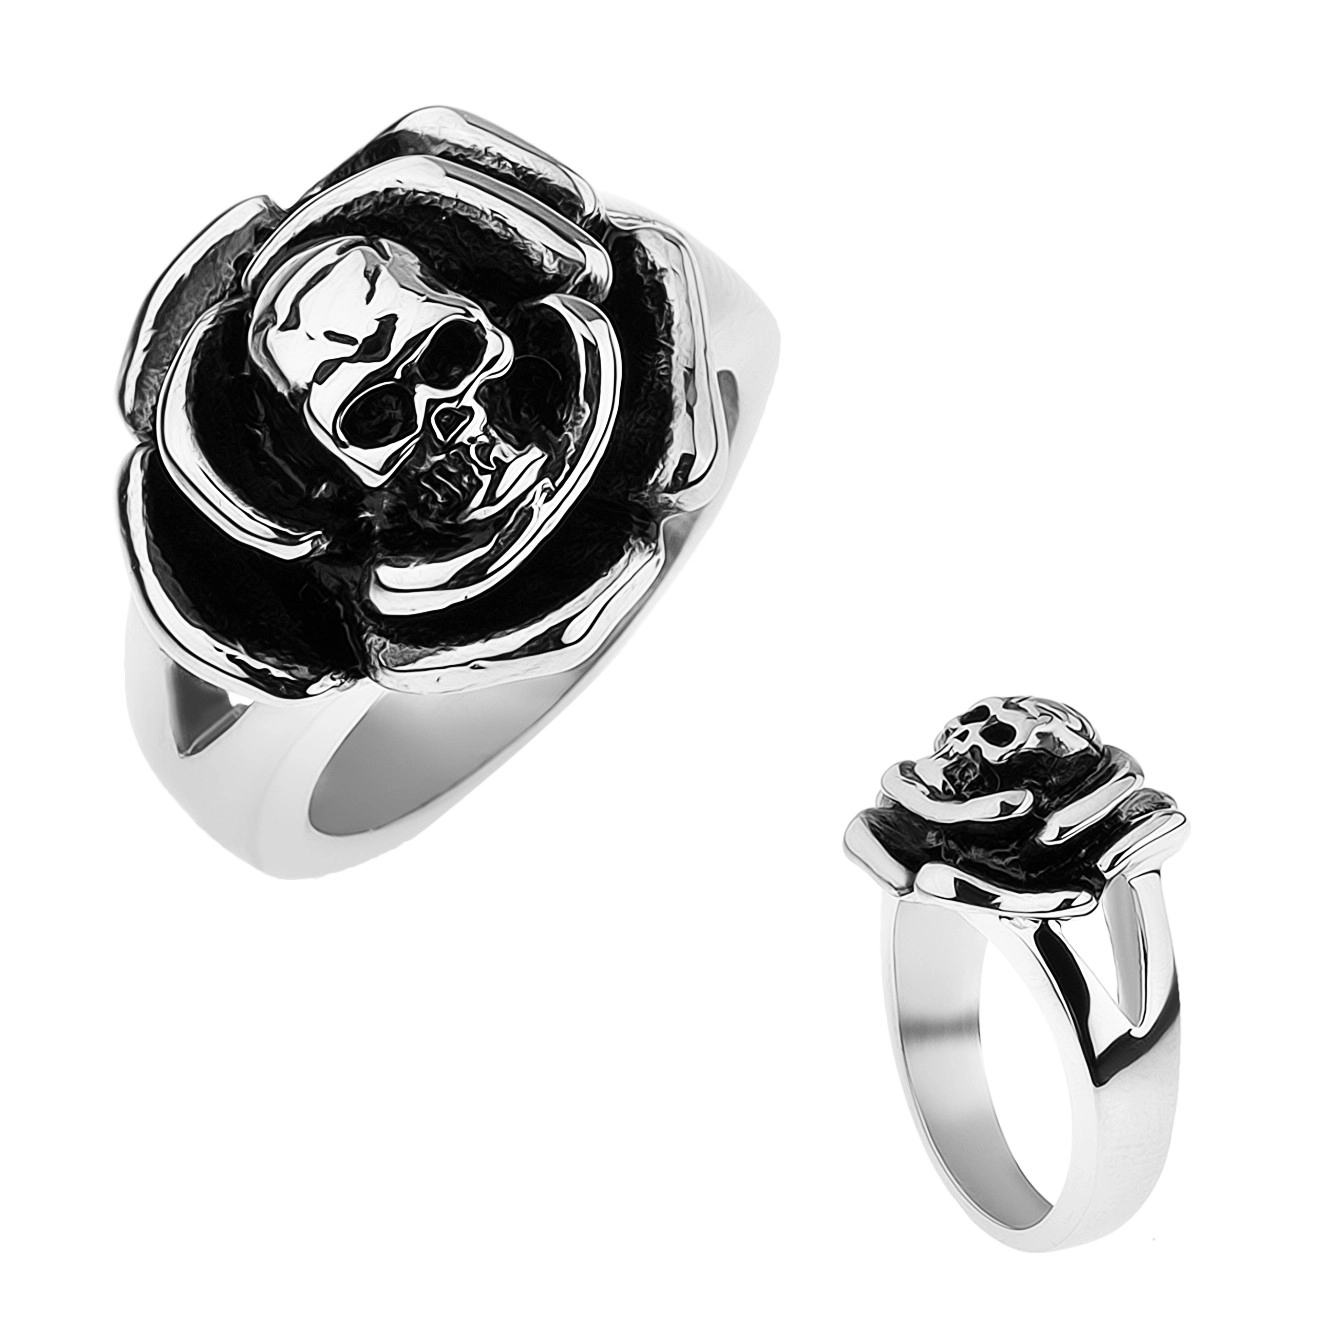 Patinovaný oceľový prsteň, ruža s lebkou v strede, rozdvojené ramená - Veľkosť: 70 mm